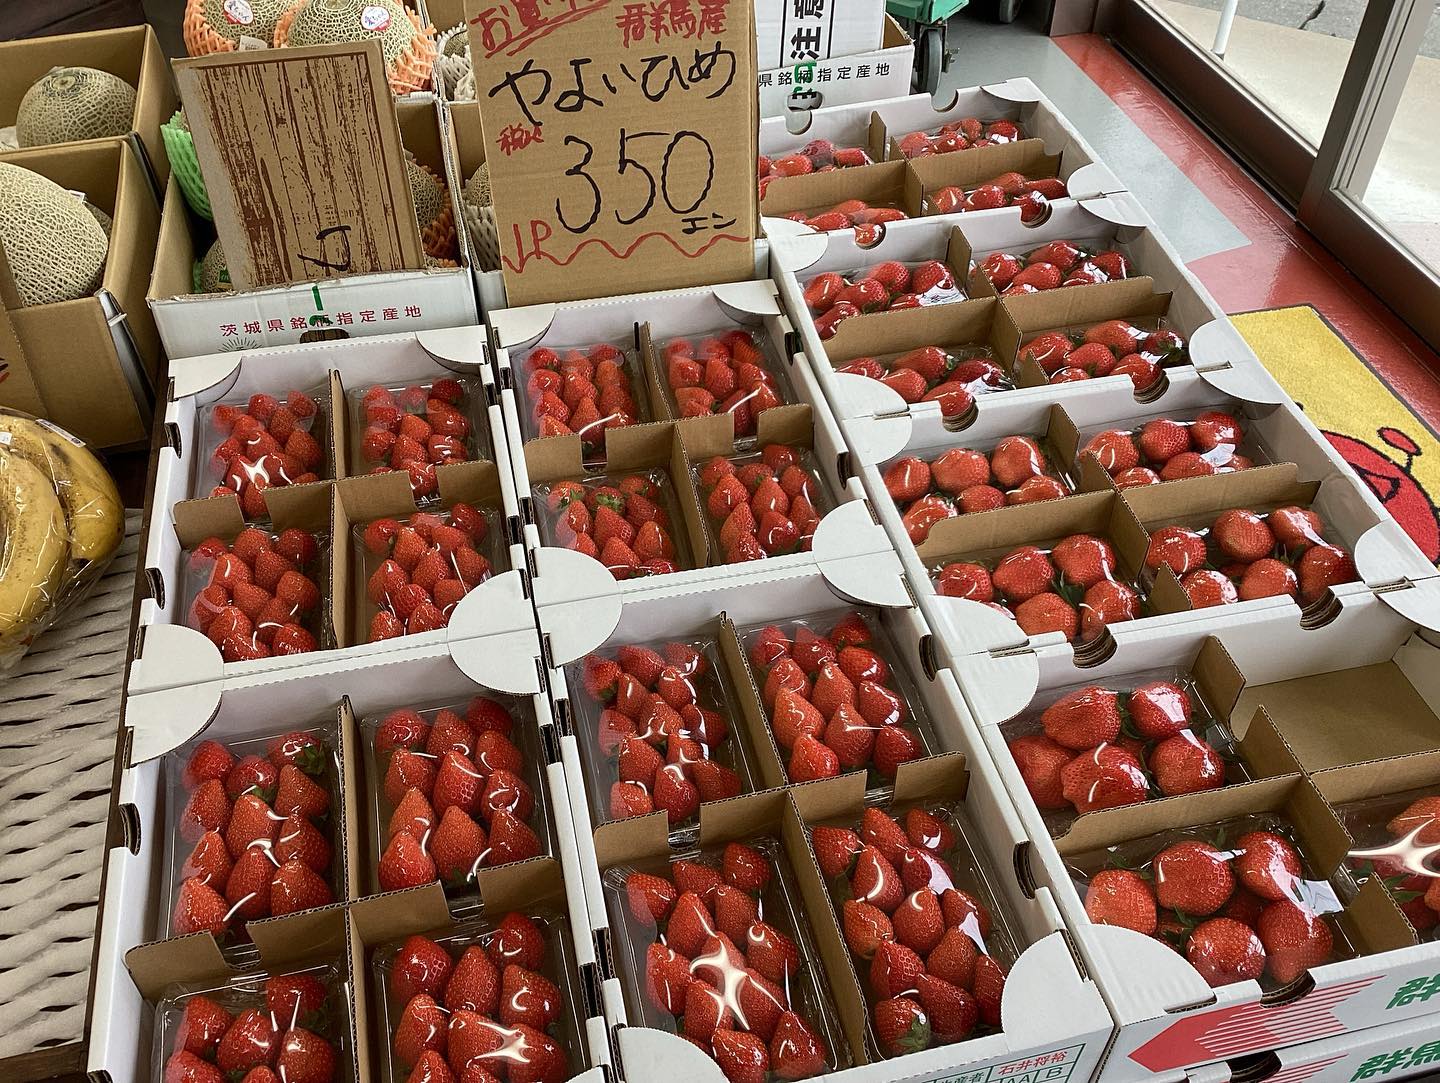 おはようございます
5/23（火）
11:00〜18:30

本日のお値段紹介
箱のトマトすごくお安いです️
甘くて美味しいですよ